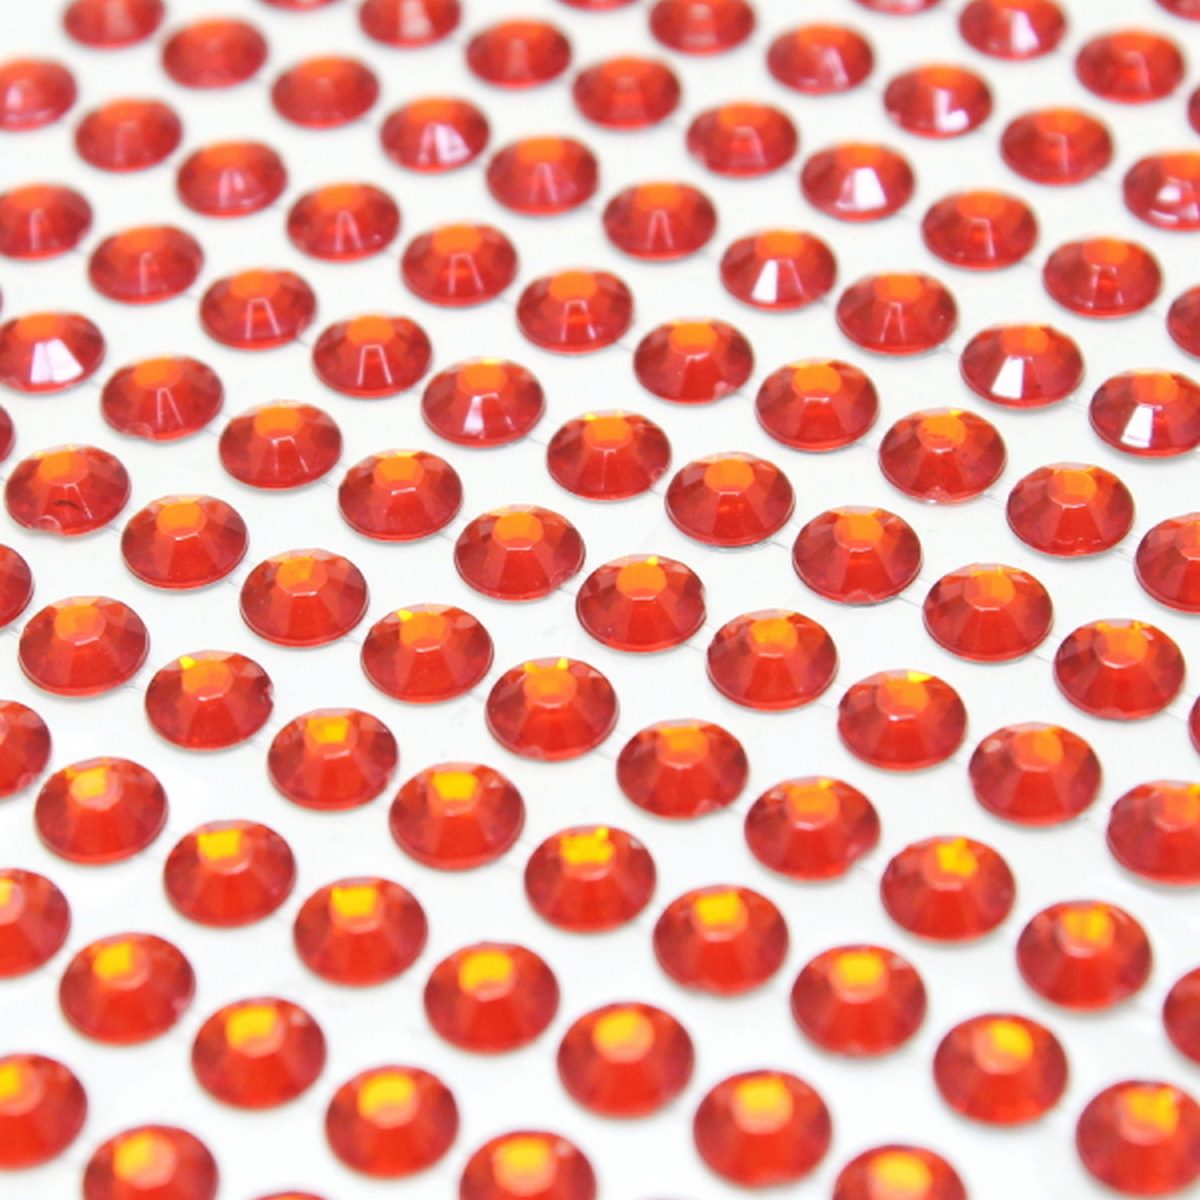 jags-mumbai Pearl & Diamond Stickers Sticker Diamond 6mm 04 Red